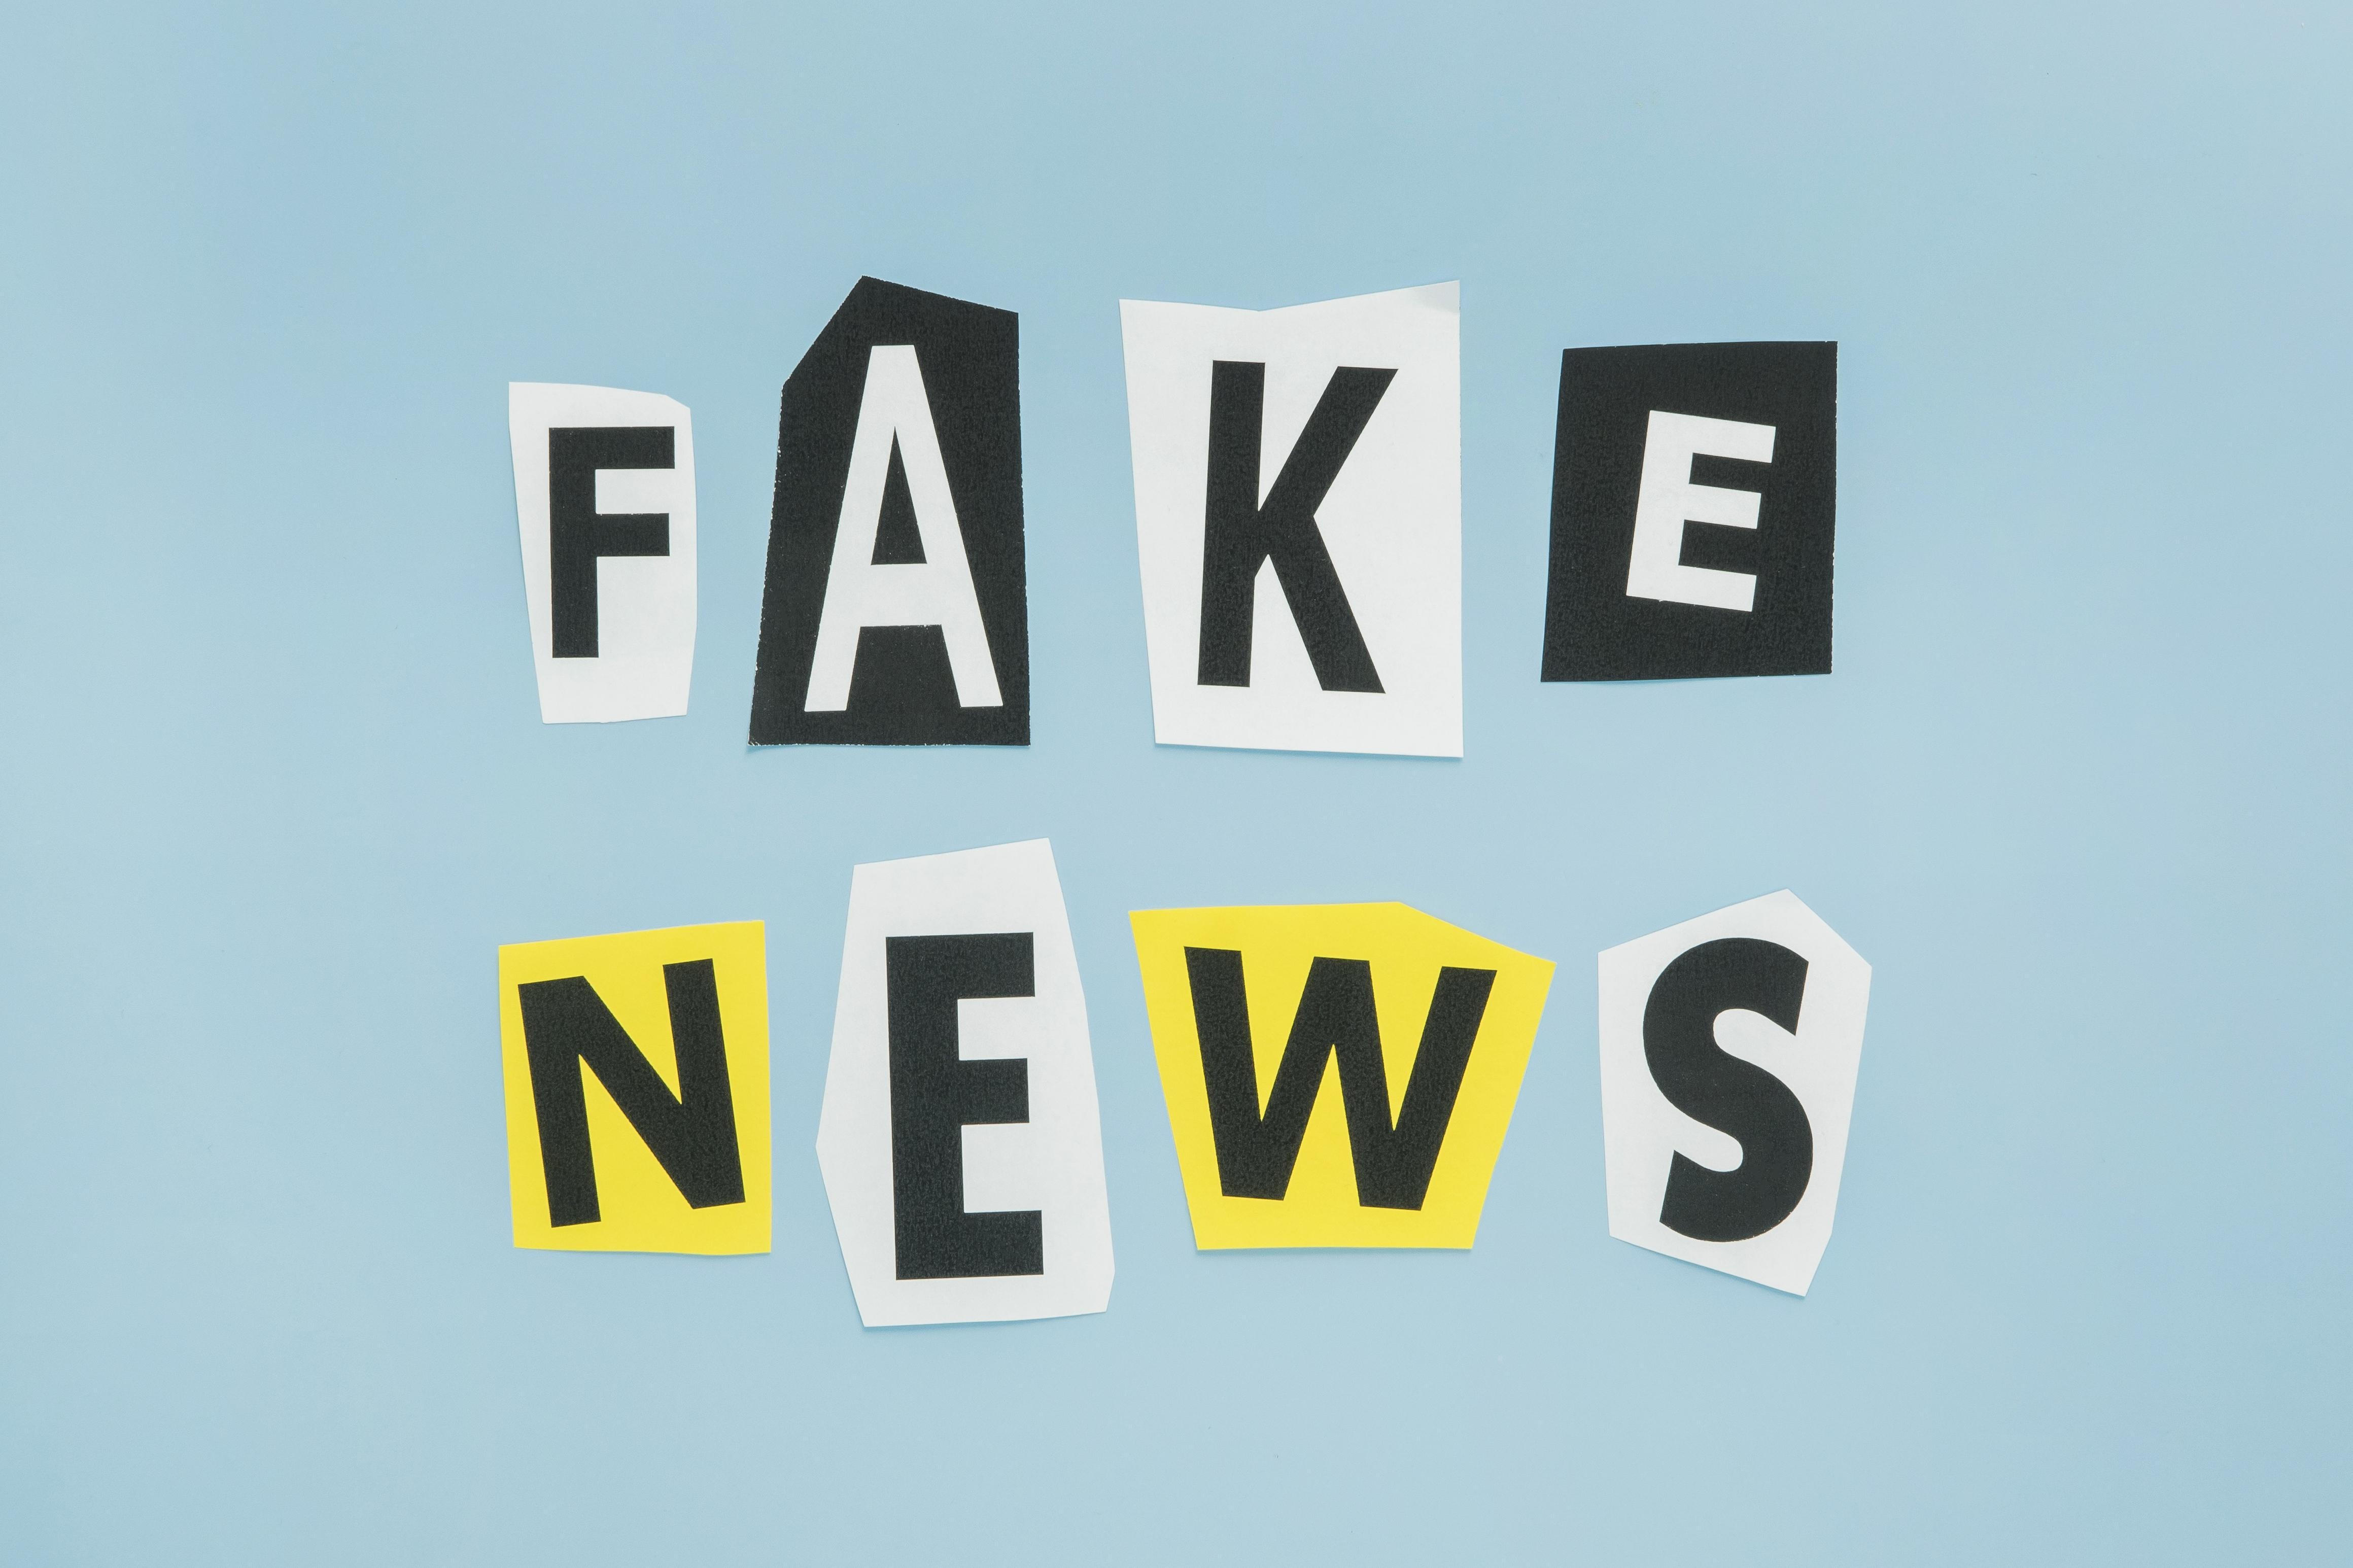 Der Schriftzug "FAKE NEWS" mittels einzelner Buchstaben und verschiedenen Papieren dargestellt